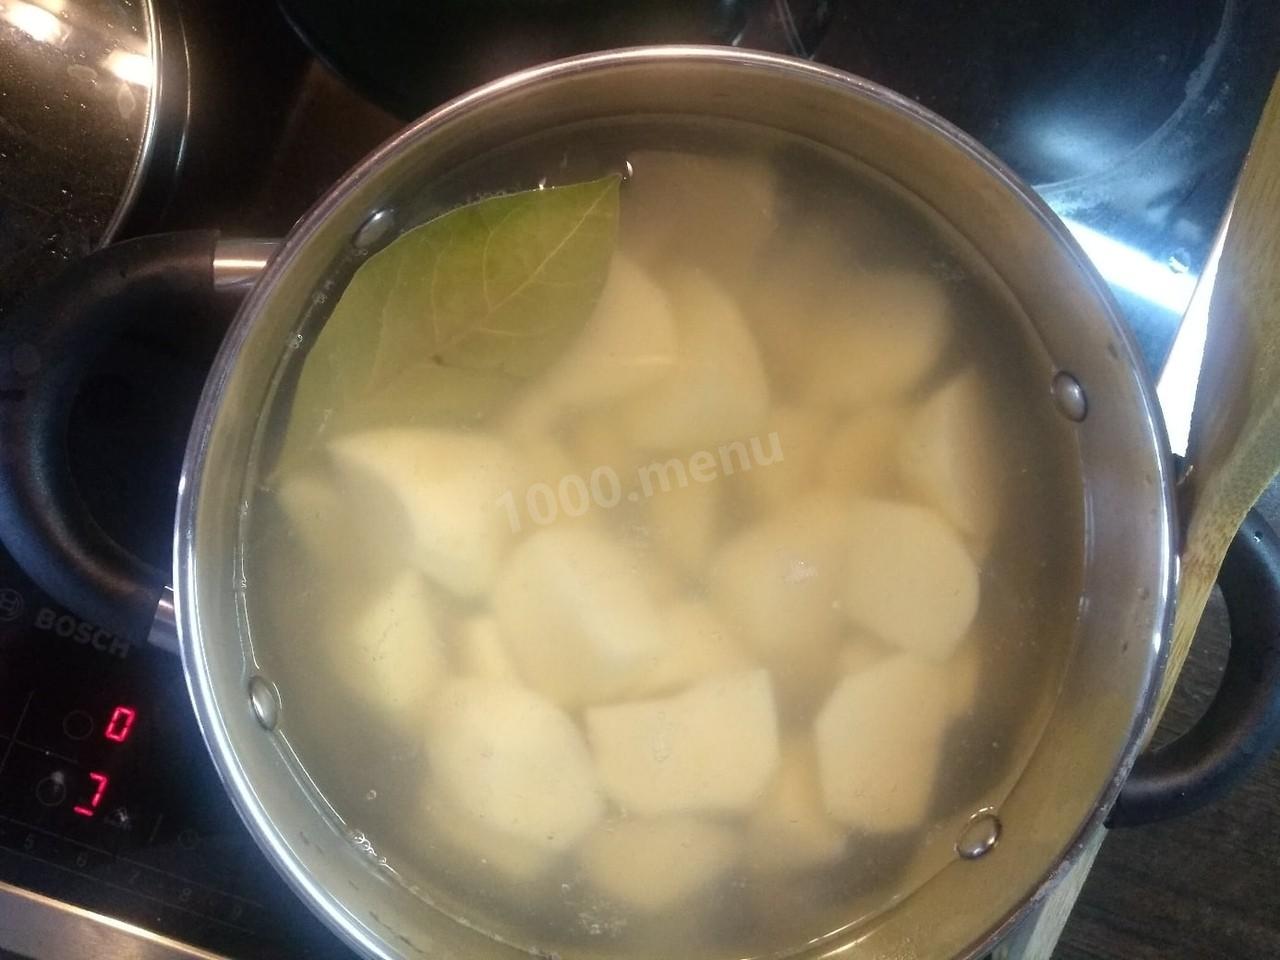 Лаврушку запекают в картошке. Как закипает вода с картошкой. Картофель бросить в кипящую воду. Горячая вода с картошкой как парить. Картошку кидать в кипящую